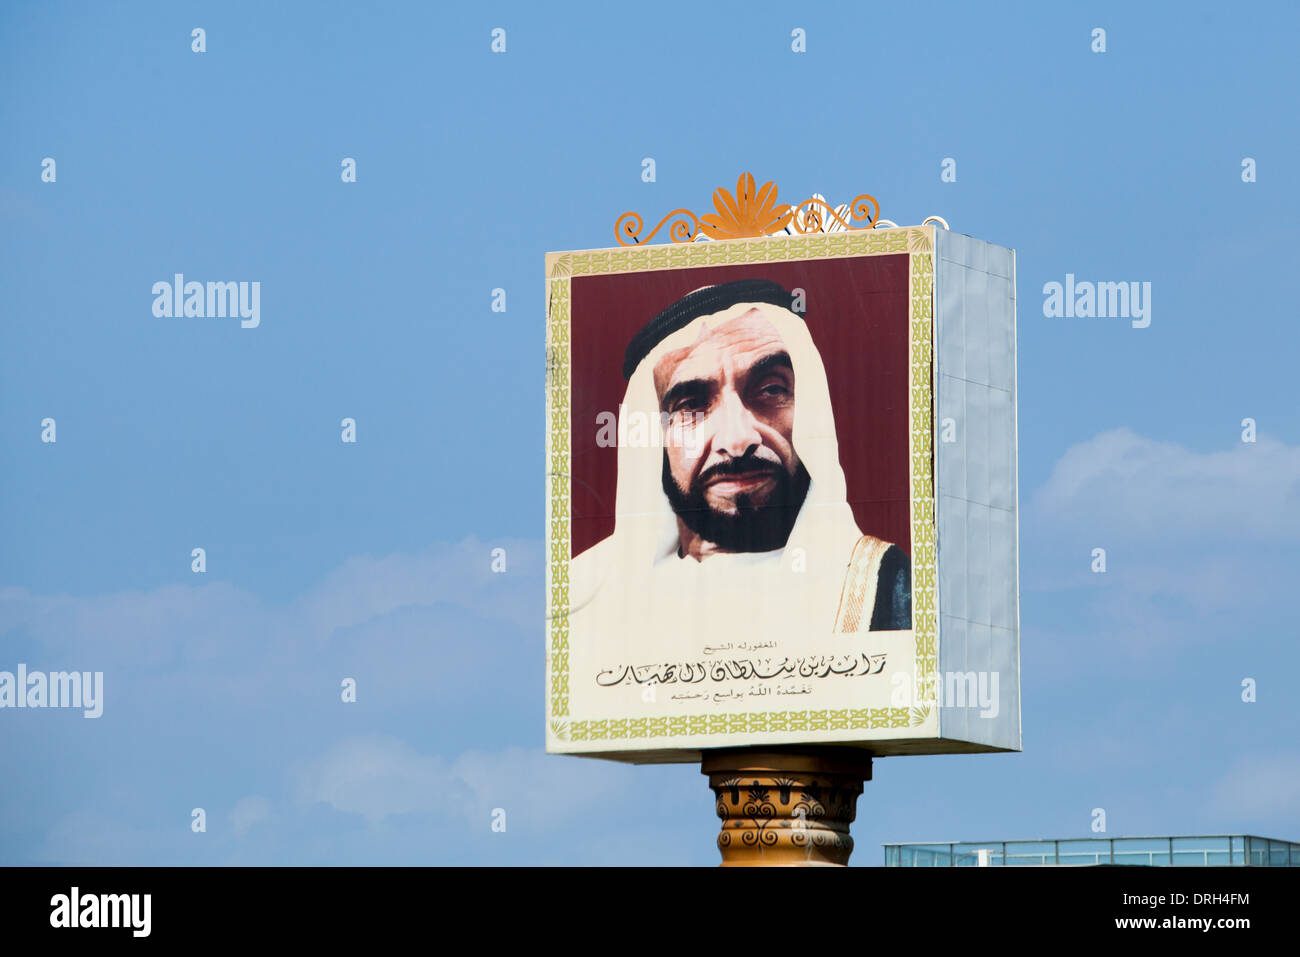 22 novembre 2013 - Dubaï, Émirats arabes unis : signe de Cheikh Zayed, à côté de Zayed Road (Dubaï à Abu Dhabi) - l'homme qui a fondé les EAU en 1971 Banque D'Images